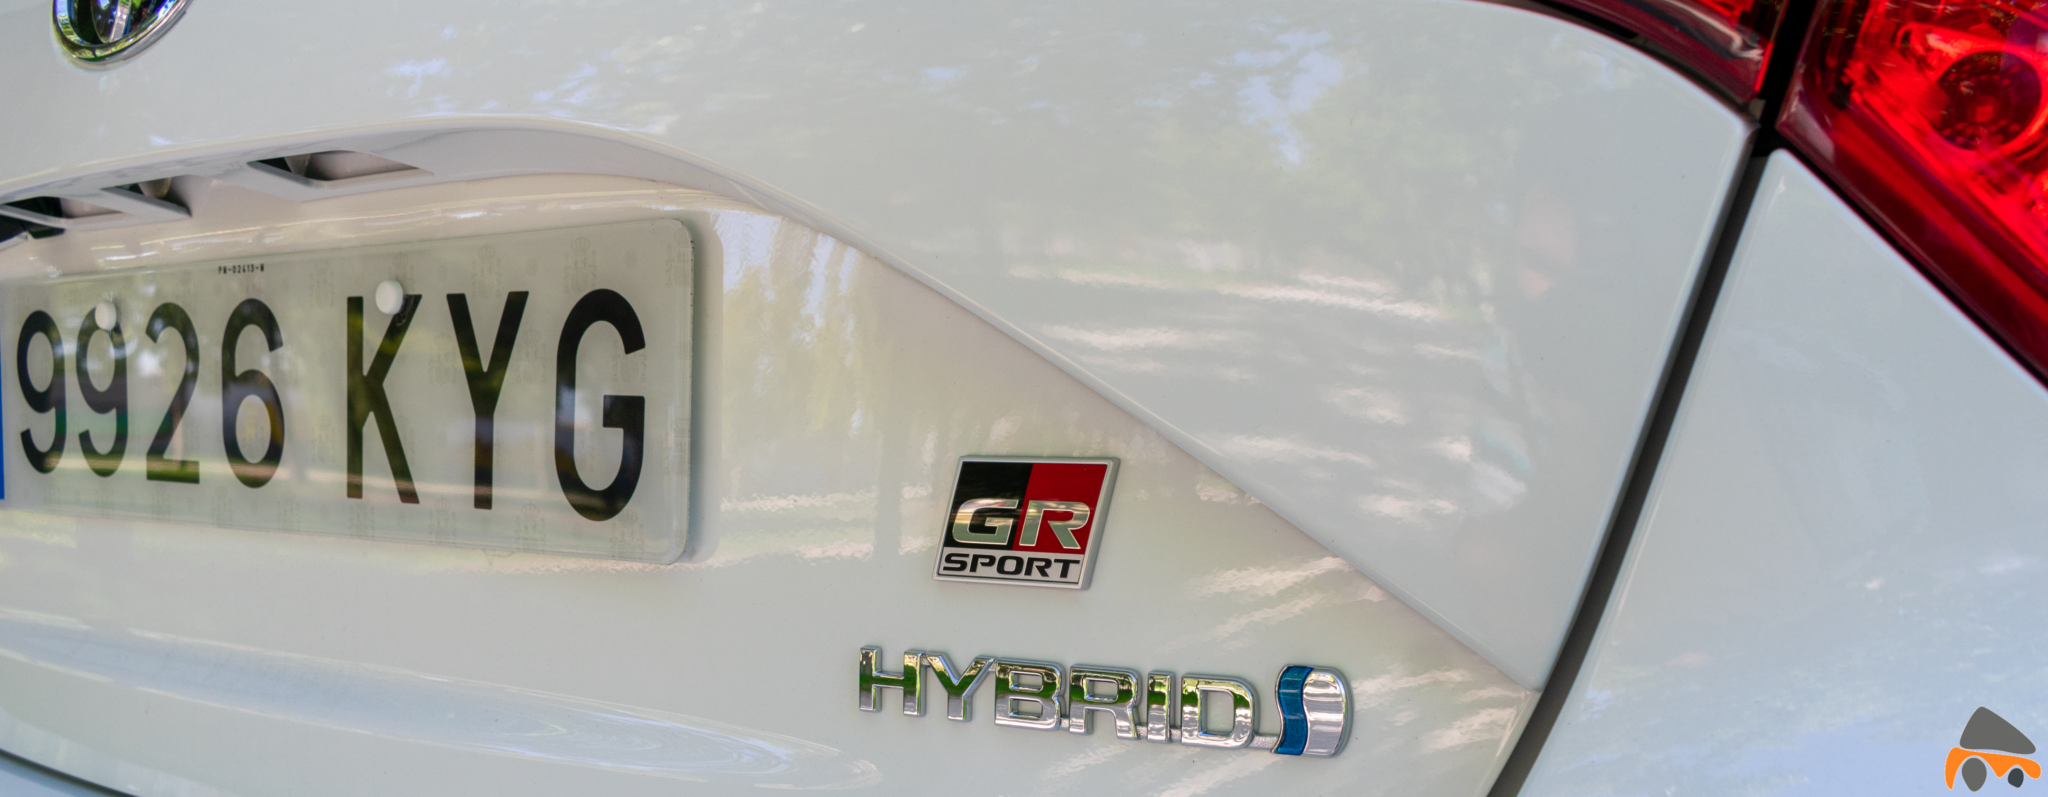 Logos traseros Toyota Yaris - Toyota Yaris GR-Sport: Un híbrido deportivo válido para la ciudad